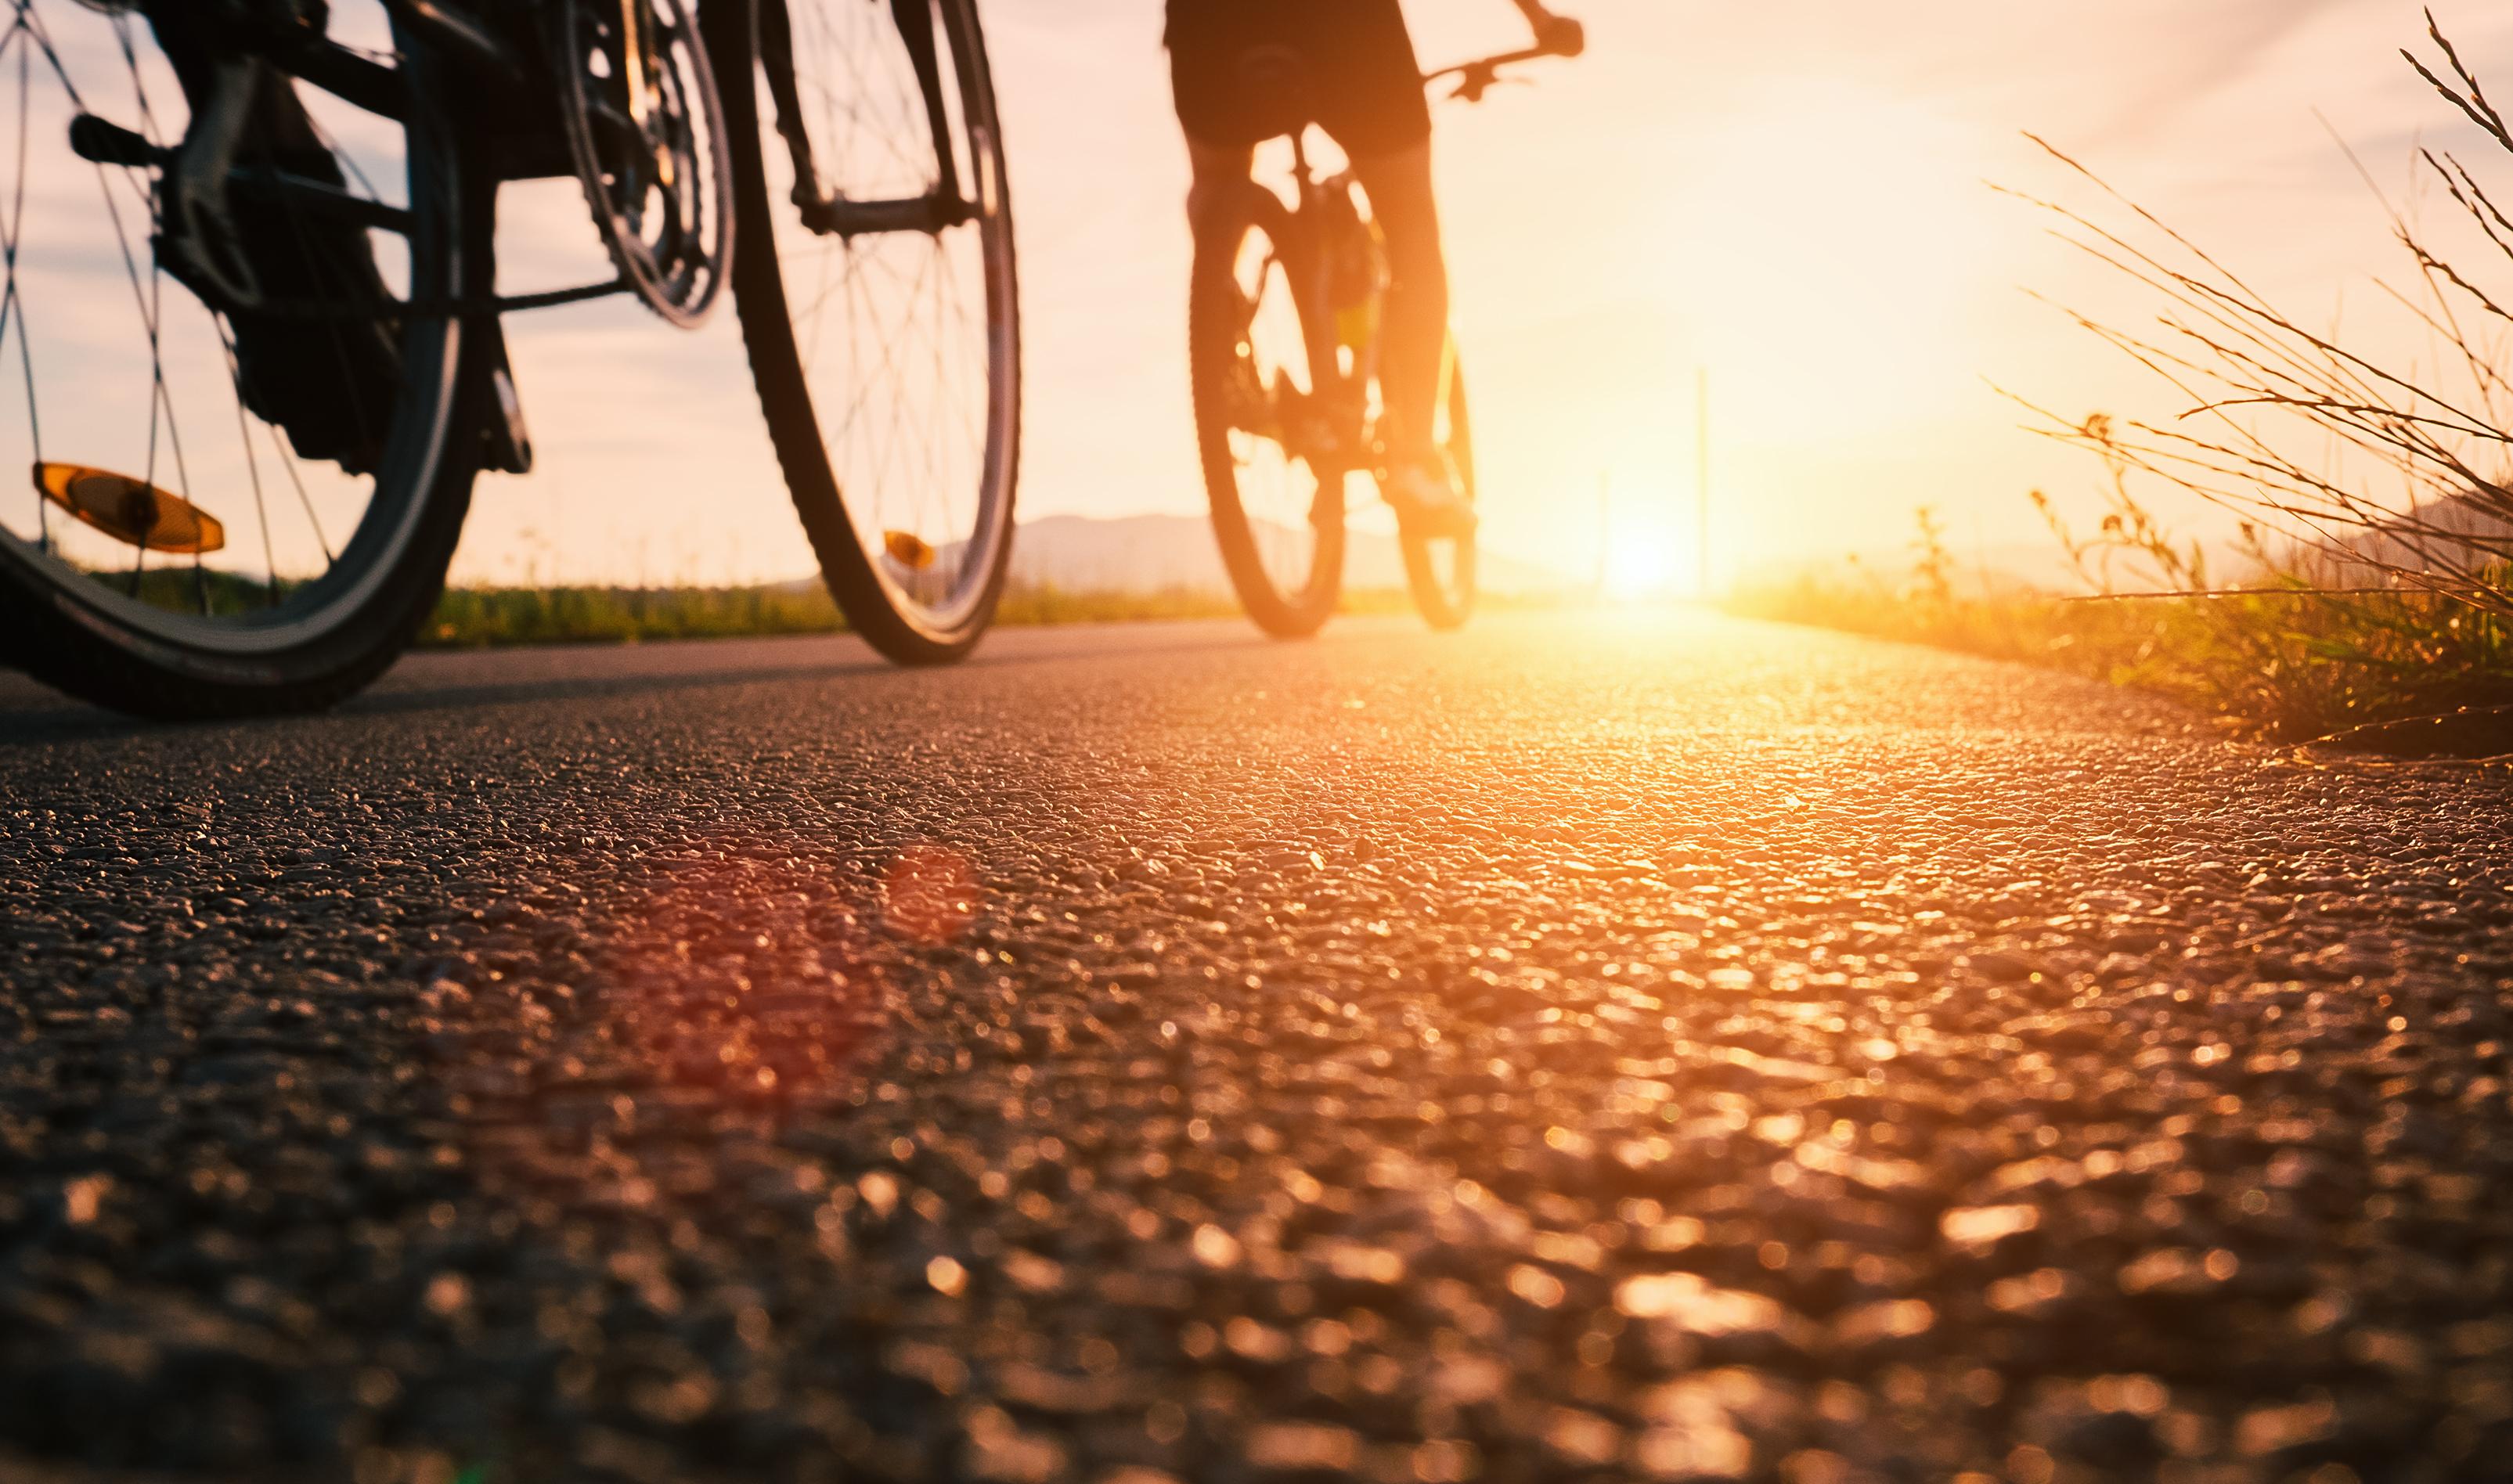 Biking into the sunset © Soloviova Liudmyla / Shutterstock